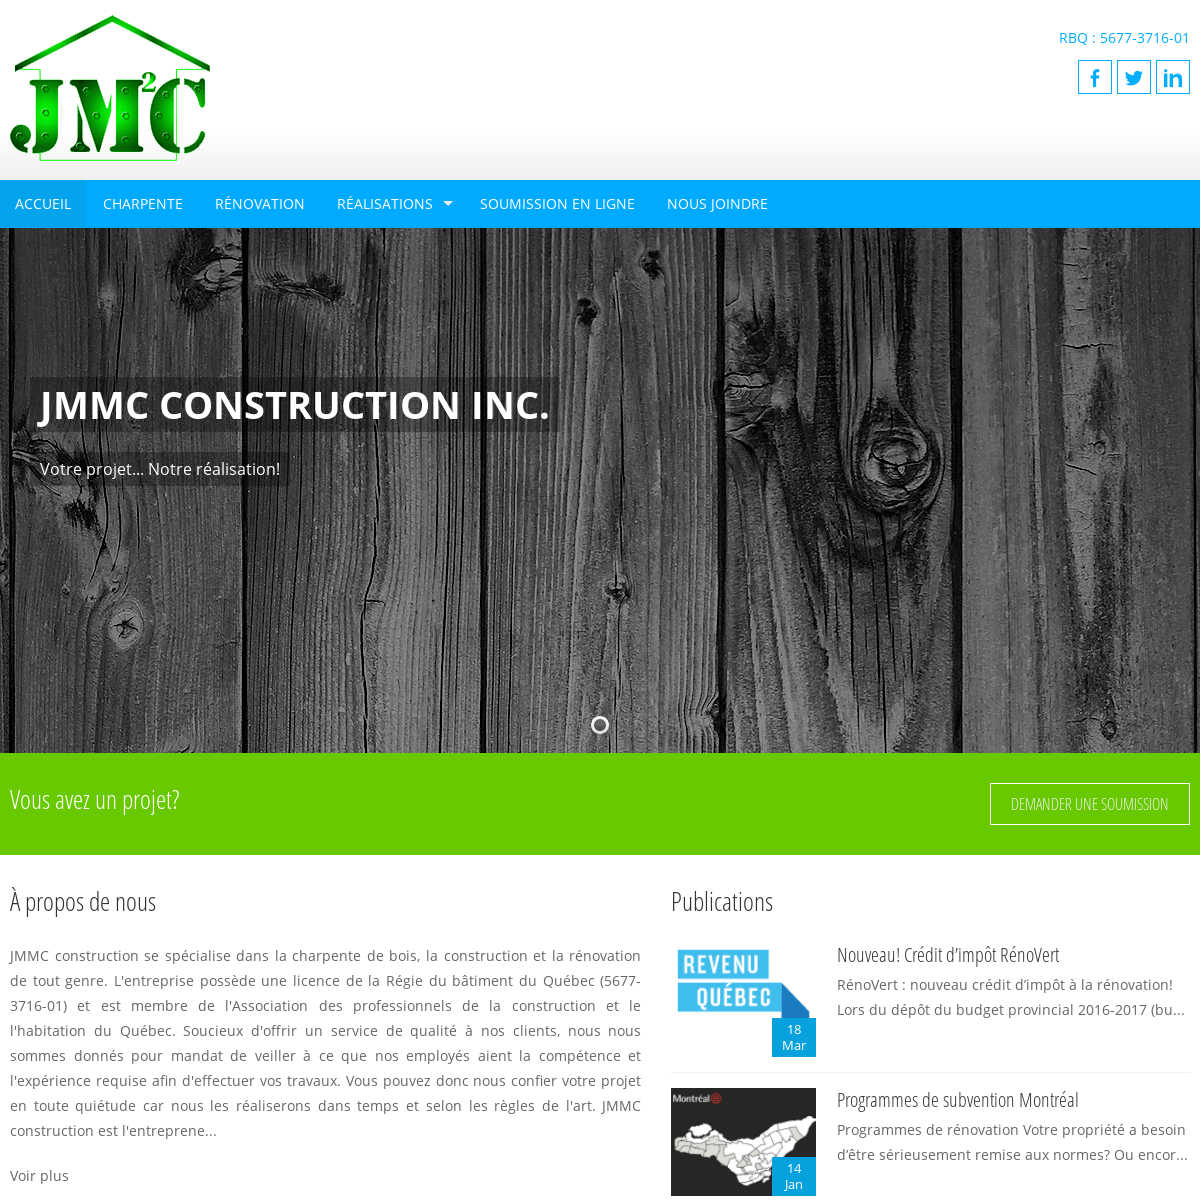 A complete backup of jmmcconstruction.com